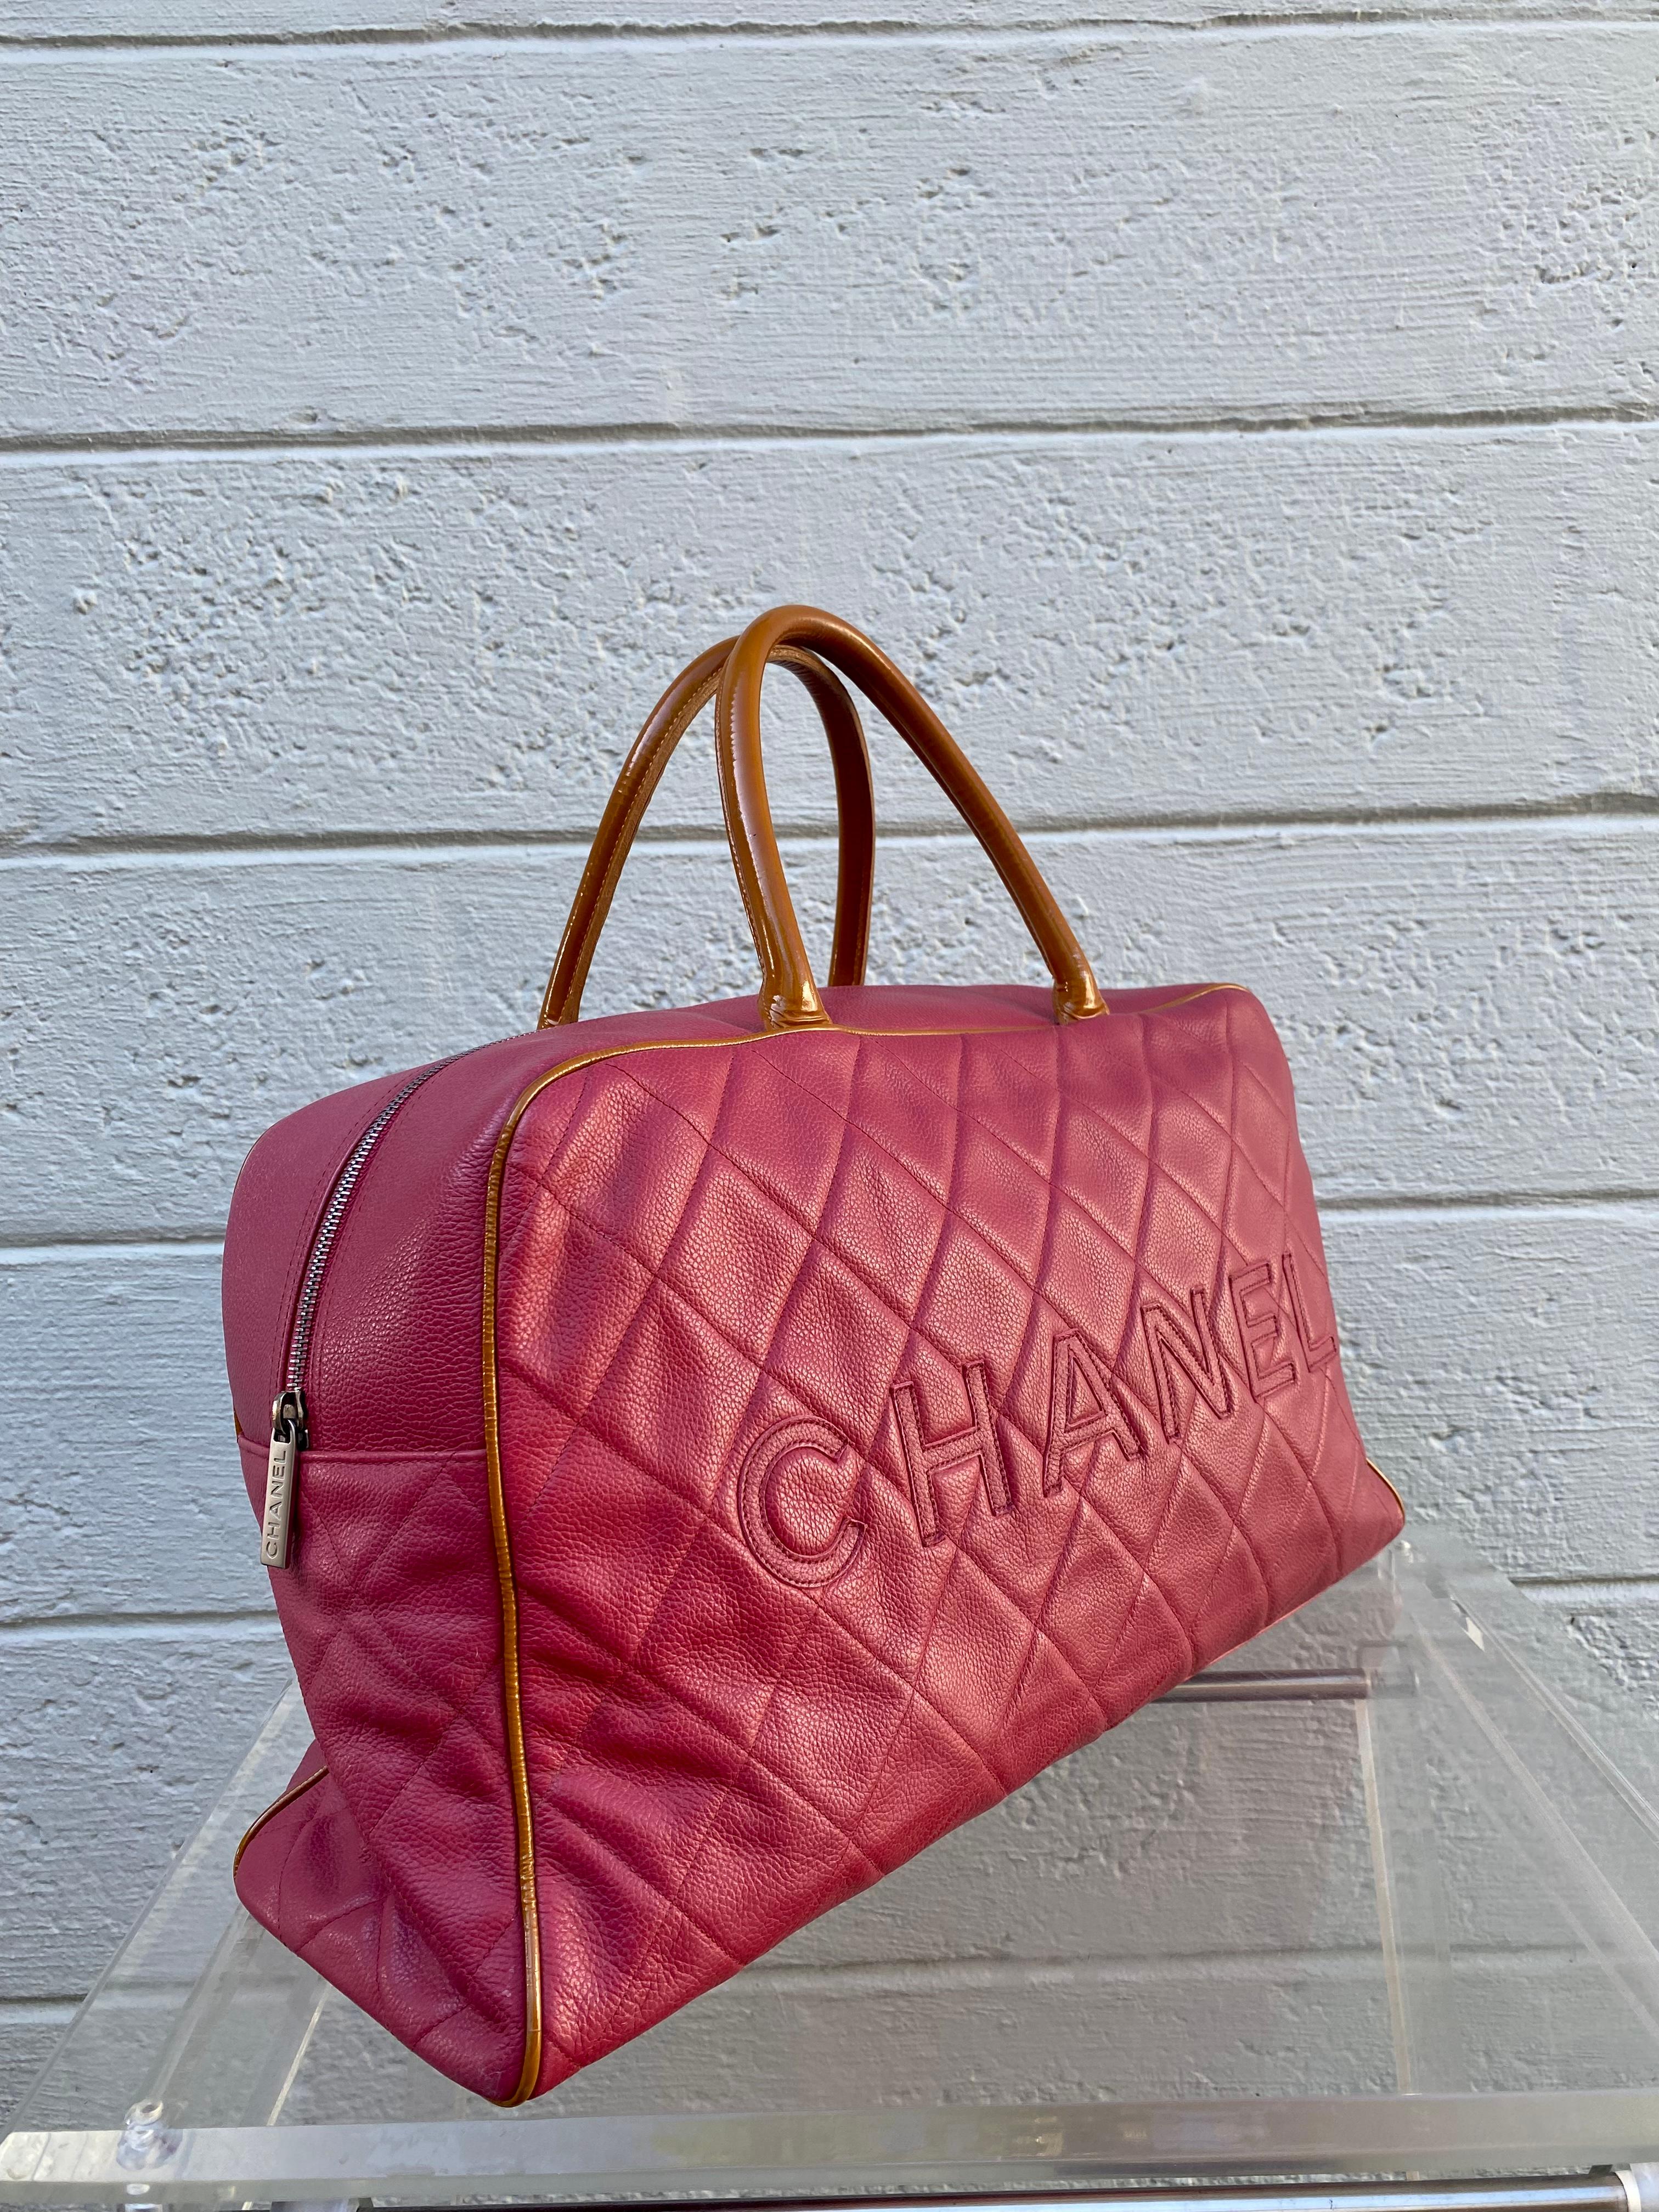 Le nec plus ultra de l'artisanat de luxe en matière de fabrication de sacs à main. La maison iconique Chanel nous offre toujours des pièces intemporelles et classiques. Le sac rare porte la création intemporelle à un nouveau niveau de sophistication